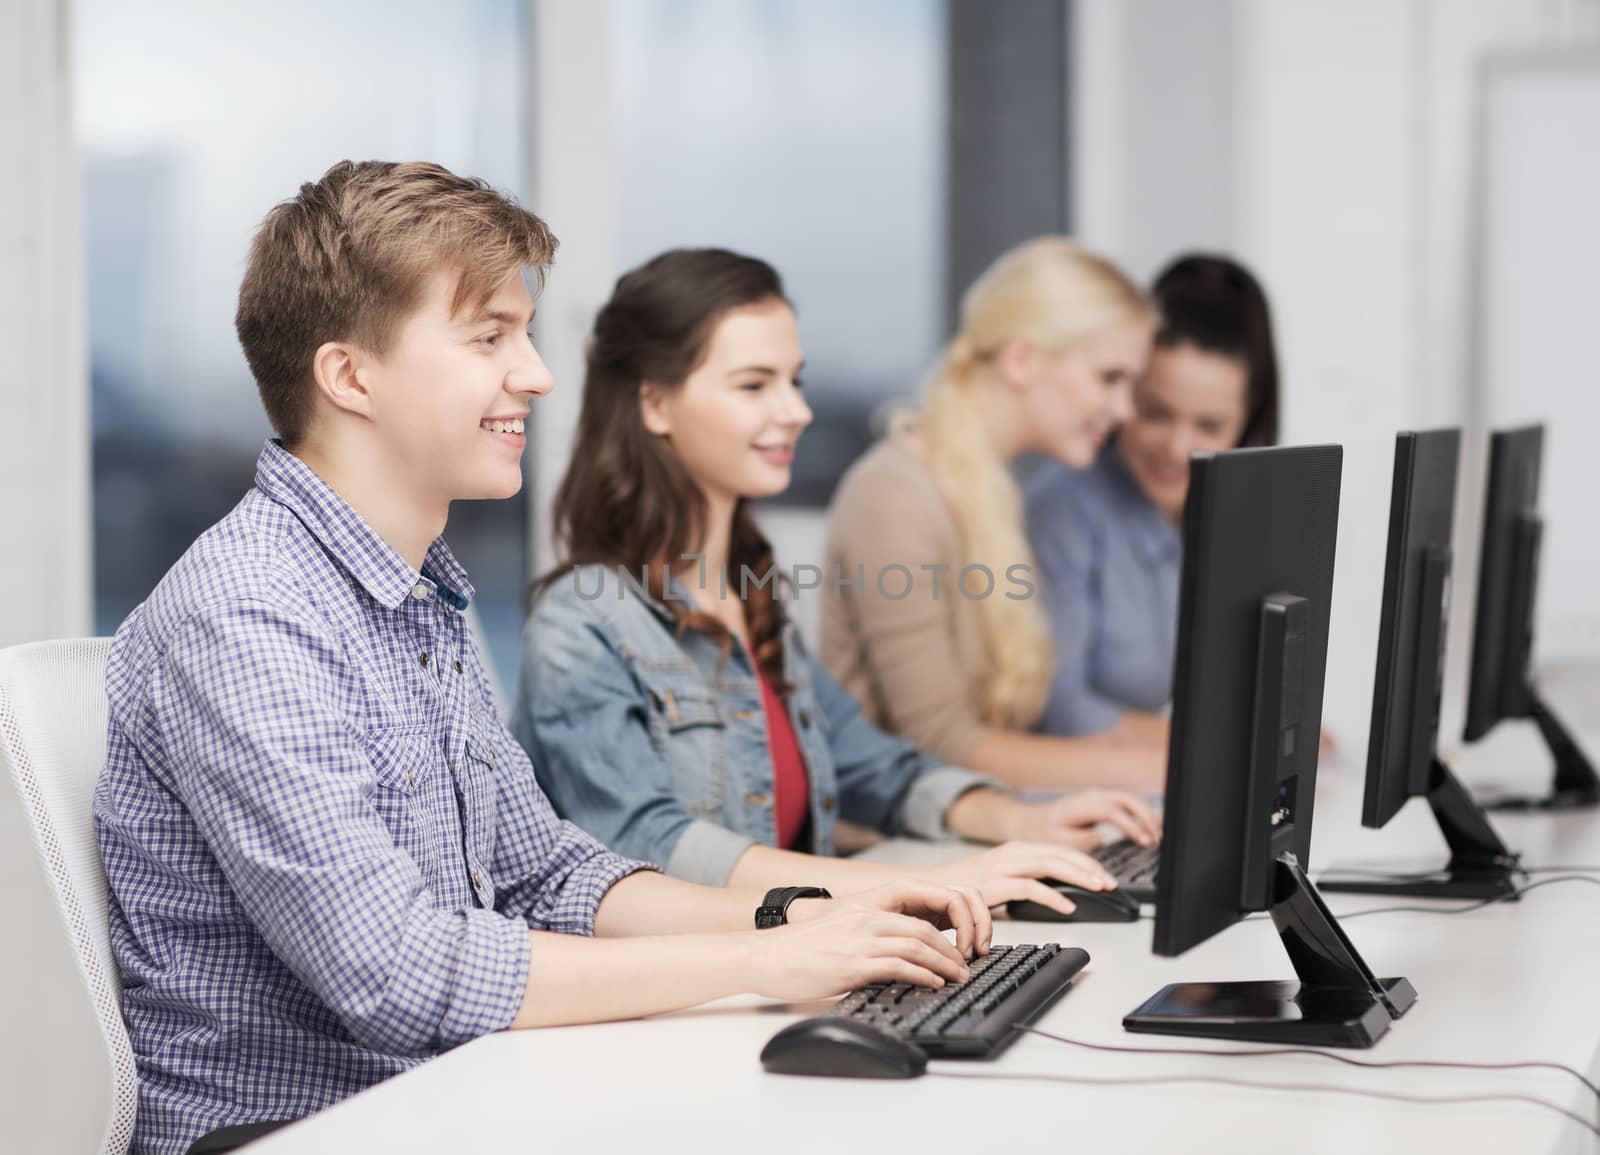 students looking at computer monitor at school by dolgachov